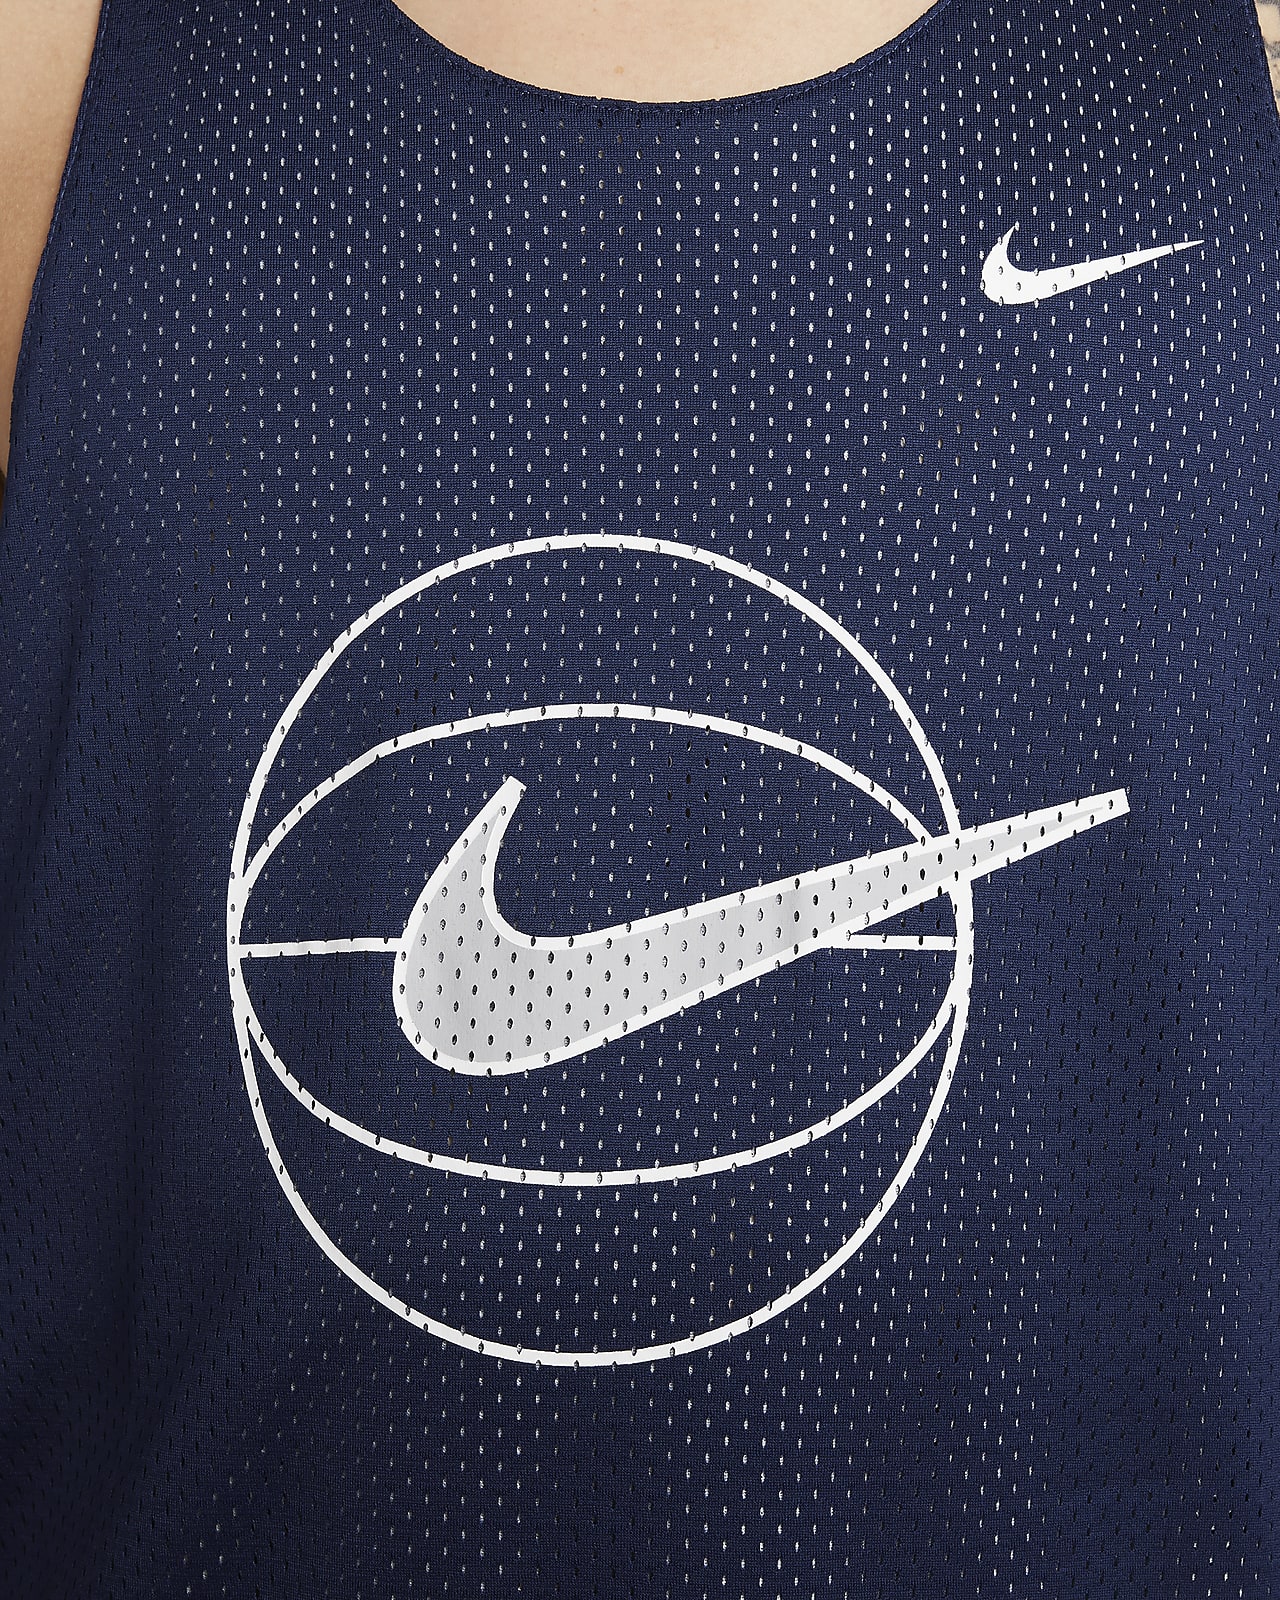 Nike, Shirts, Nike Aeroswift Nba Blank Basketball Jersey Sz Xxl